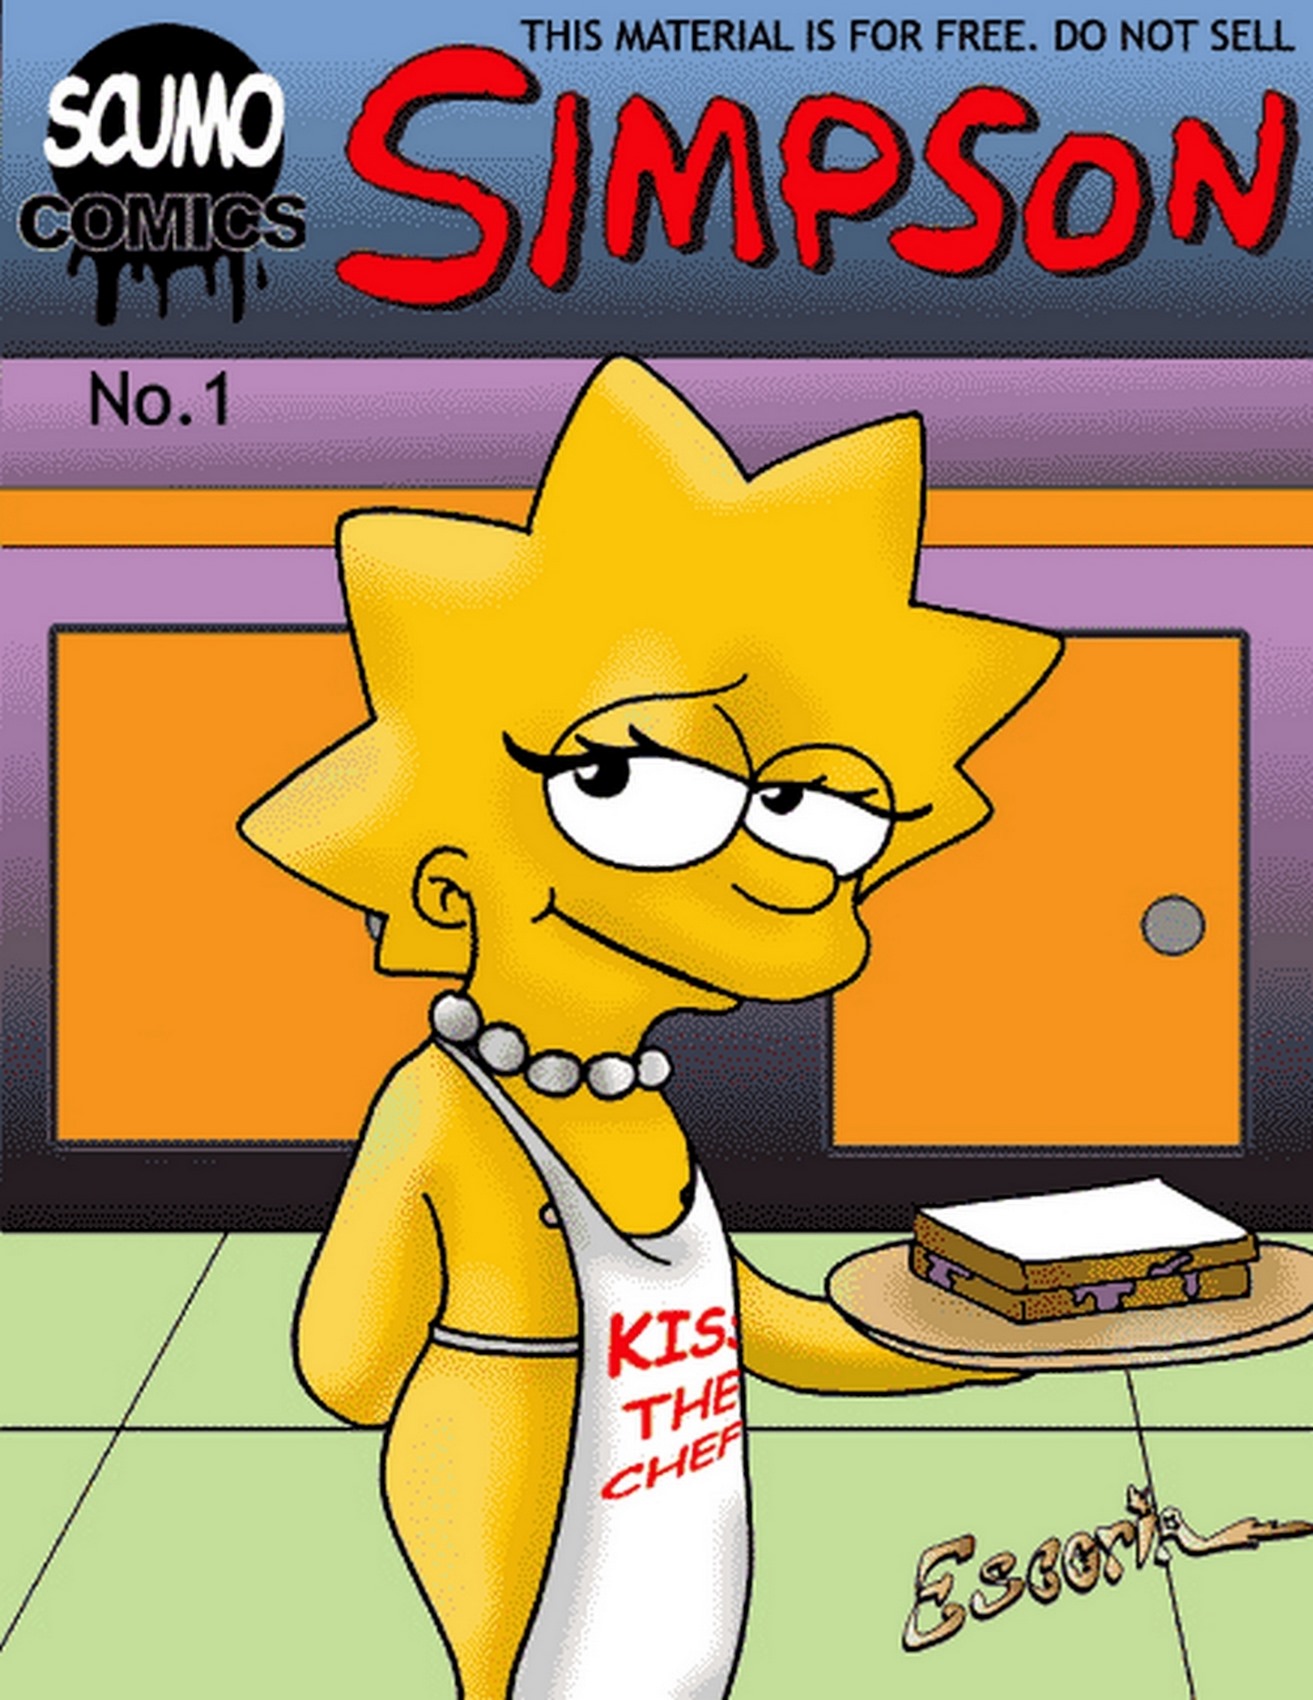 ScumoComics - Kiss The Chef (The Simpsons) | 18+ Porn Comics